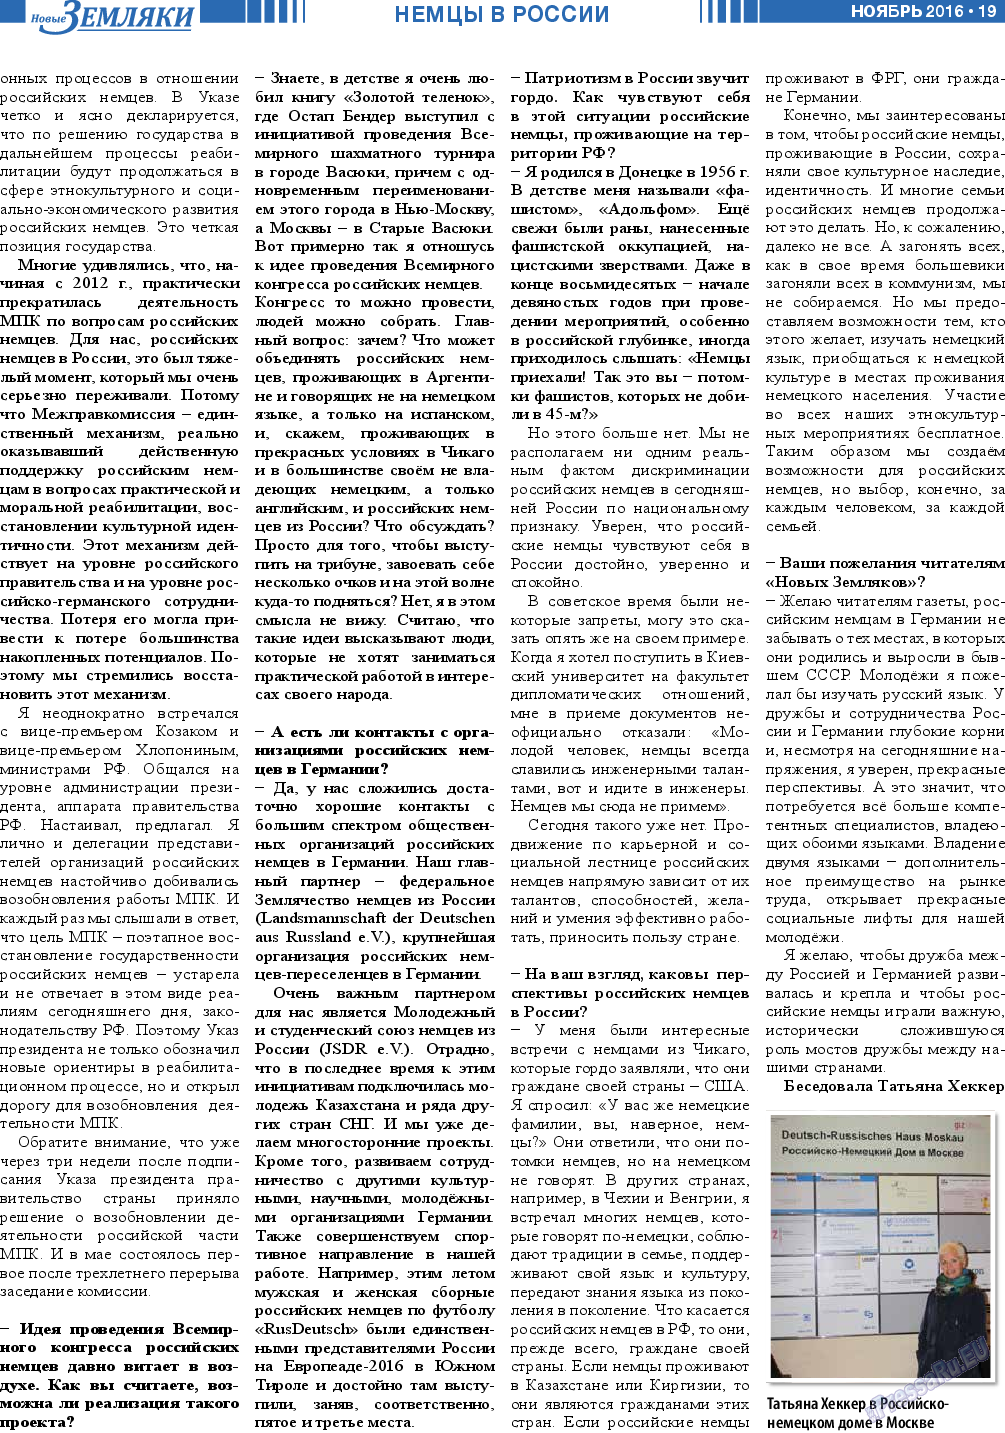 Новые Земляки (газета). 2016 год, номер 11, стр. 19